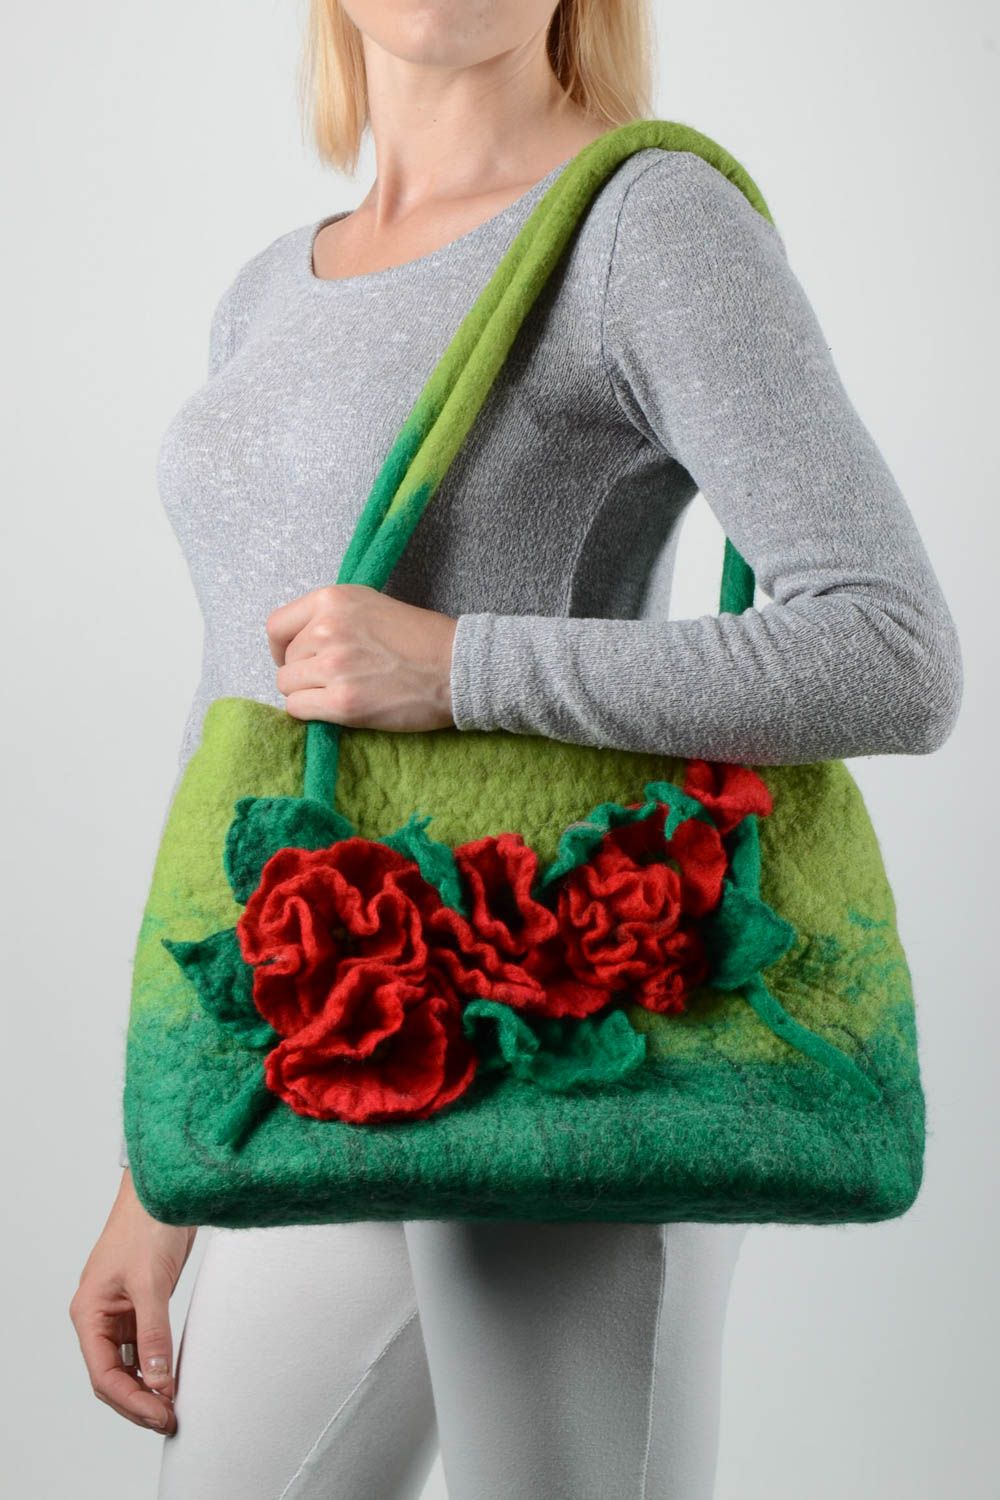 Sac à main vert Sac de laine fait main avec fleurs rouges Accessoire femme photo 1